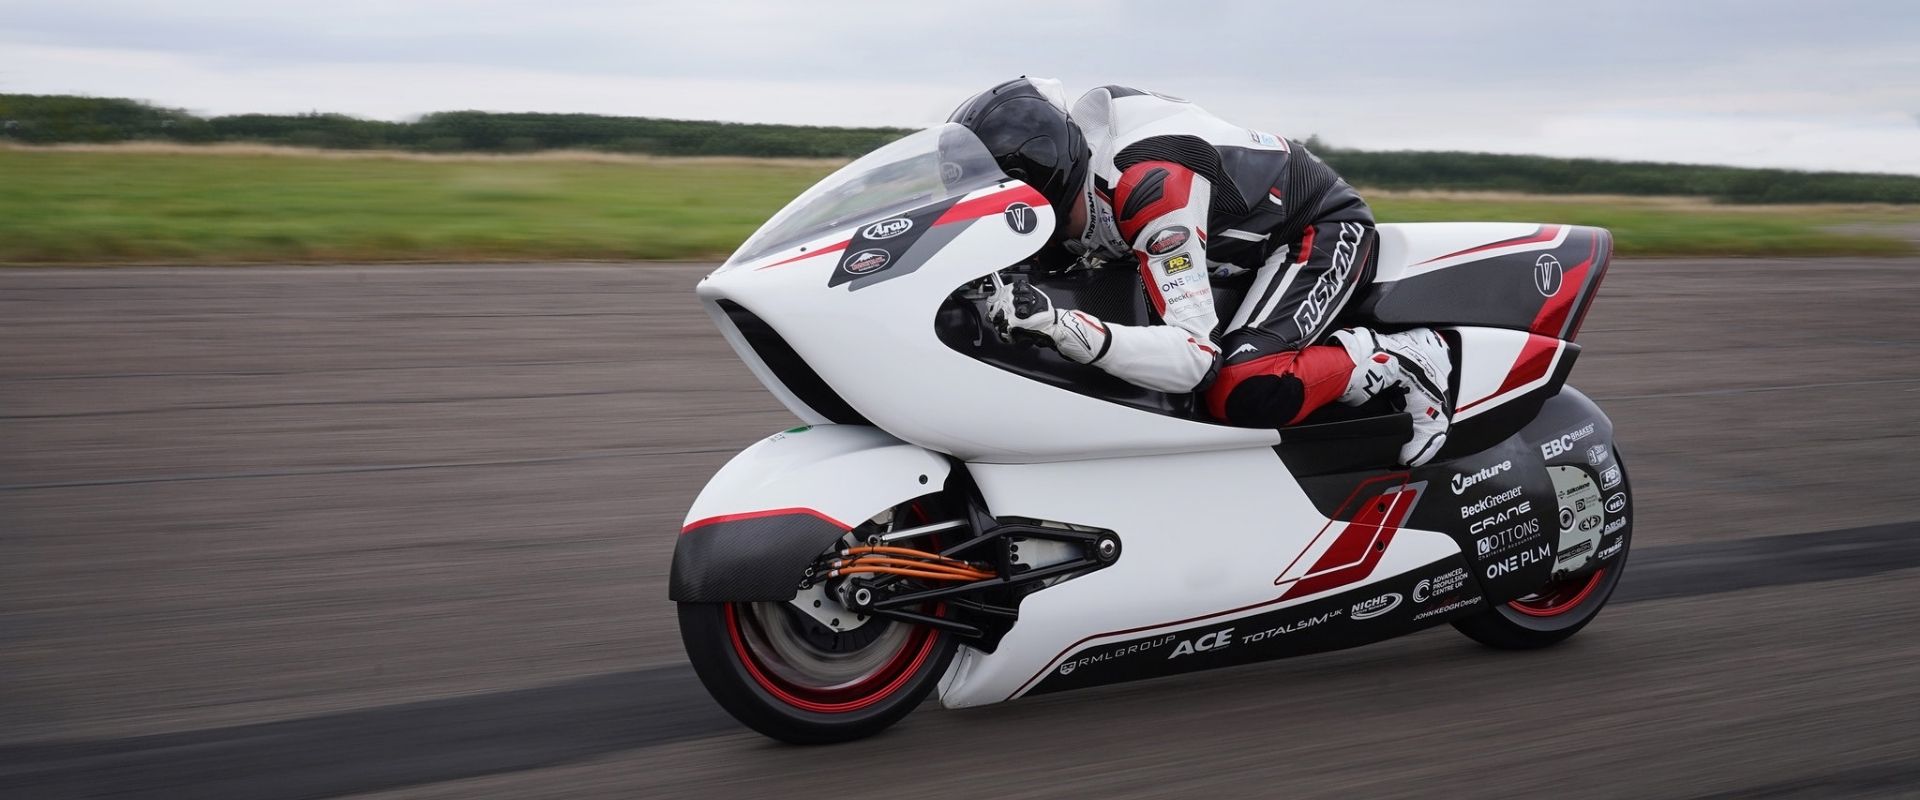 white motorcycle concepts motocicleta eléctrica motocicleta aerodinámica portada 1